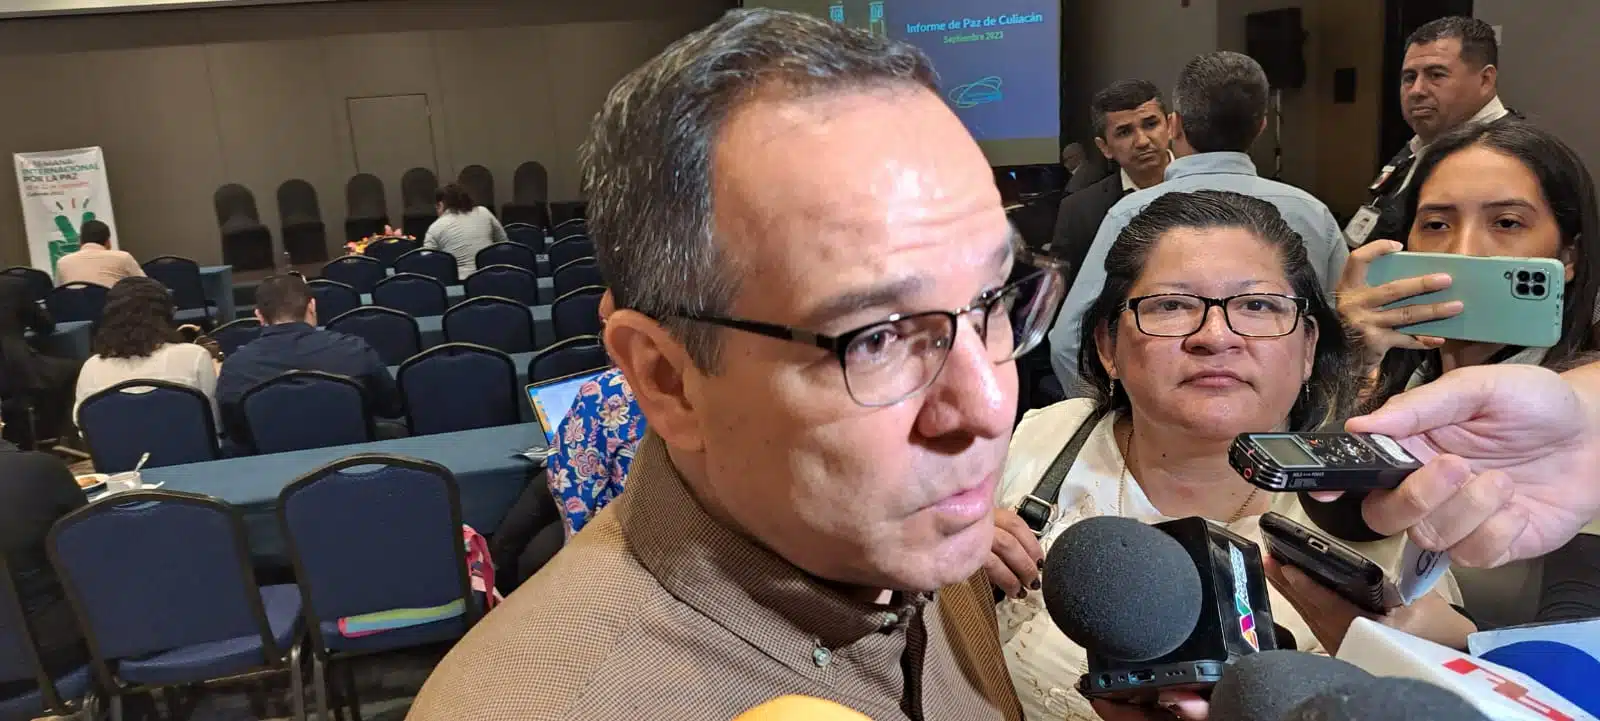 Miguel Ángel Calderón Quevedo con medios de prensa